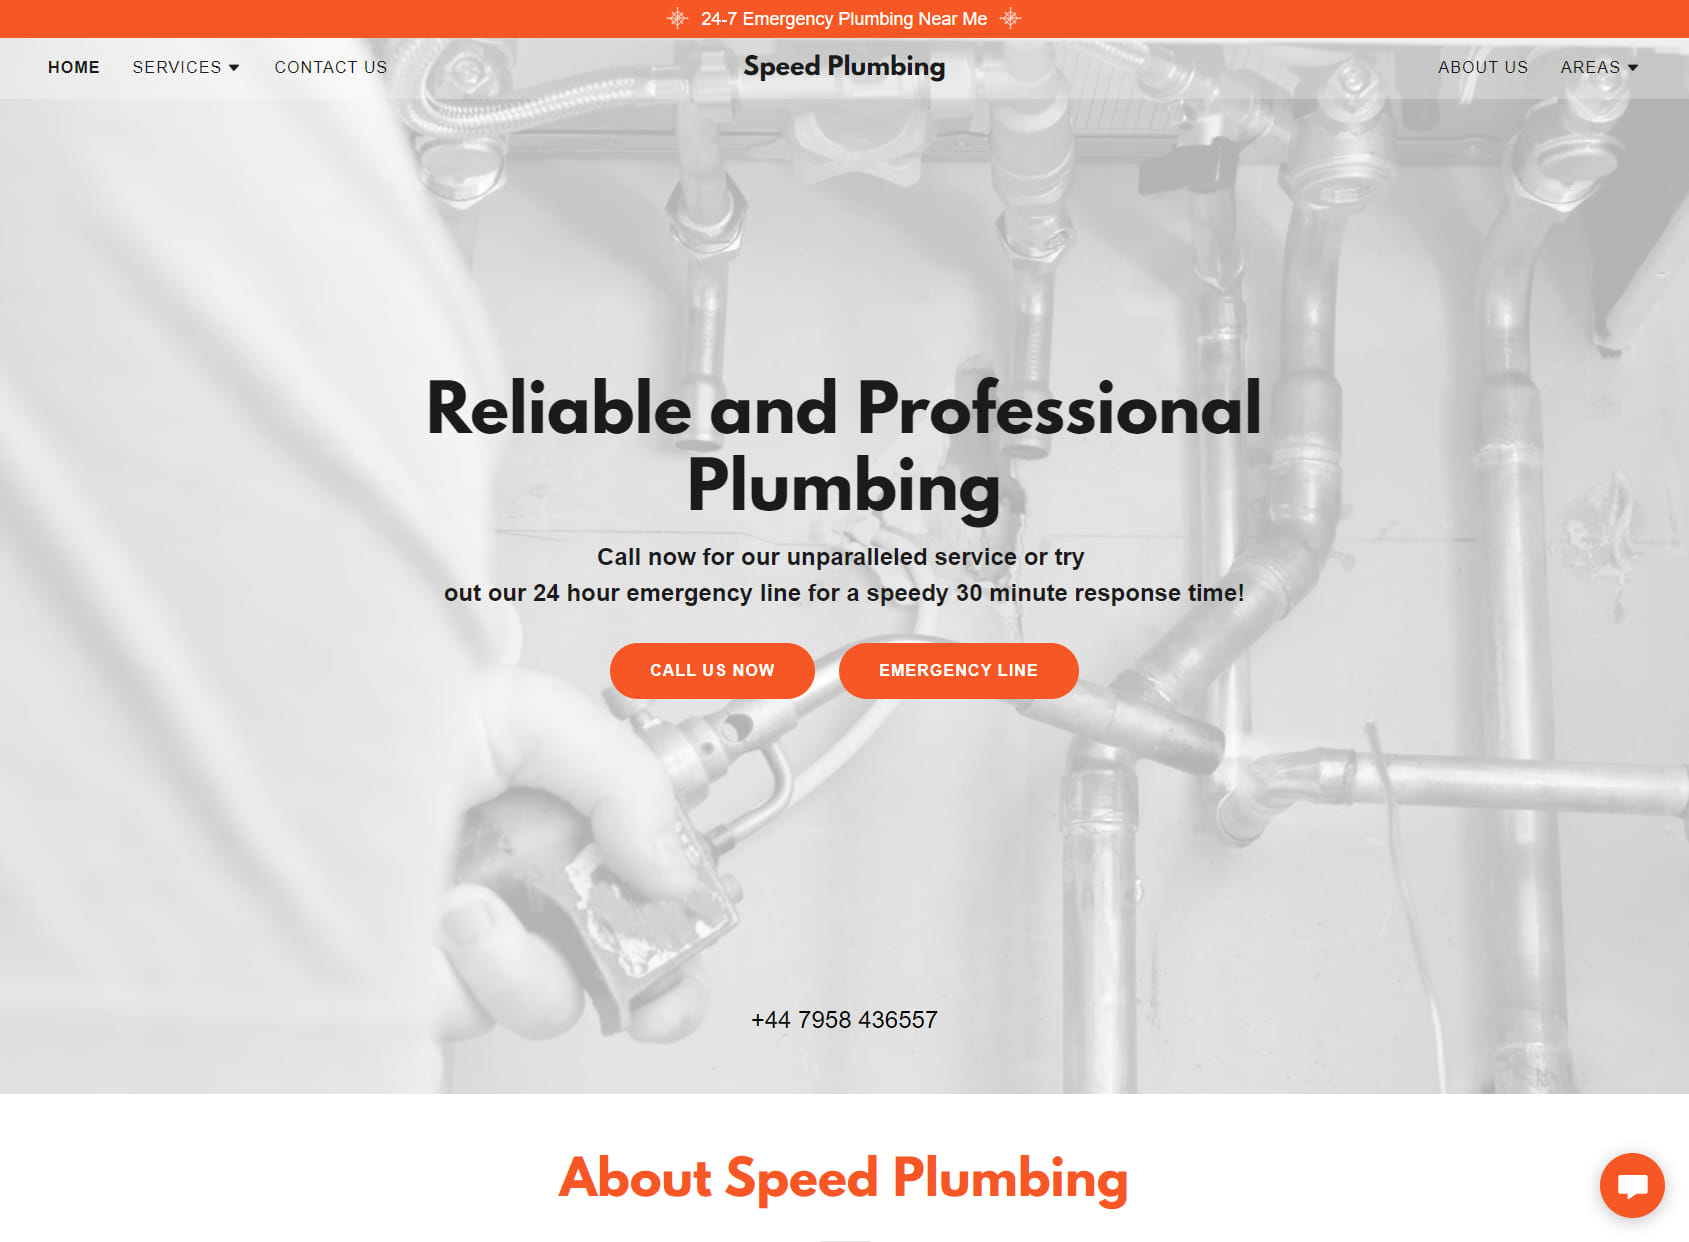 Speed Plumbing - Emergency Plumber, Heating, Gas - Slough, Maidenhead, Heathrow